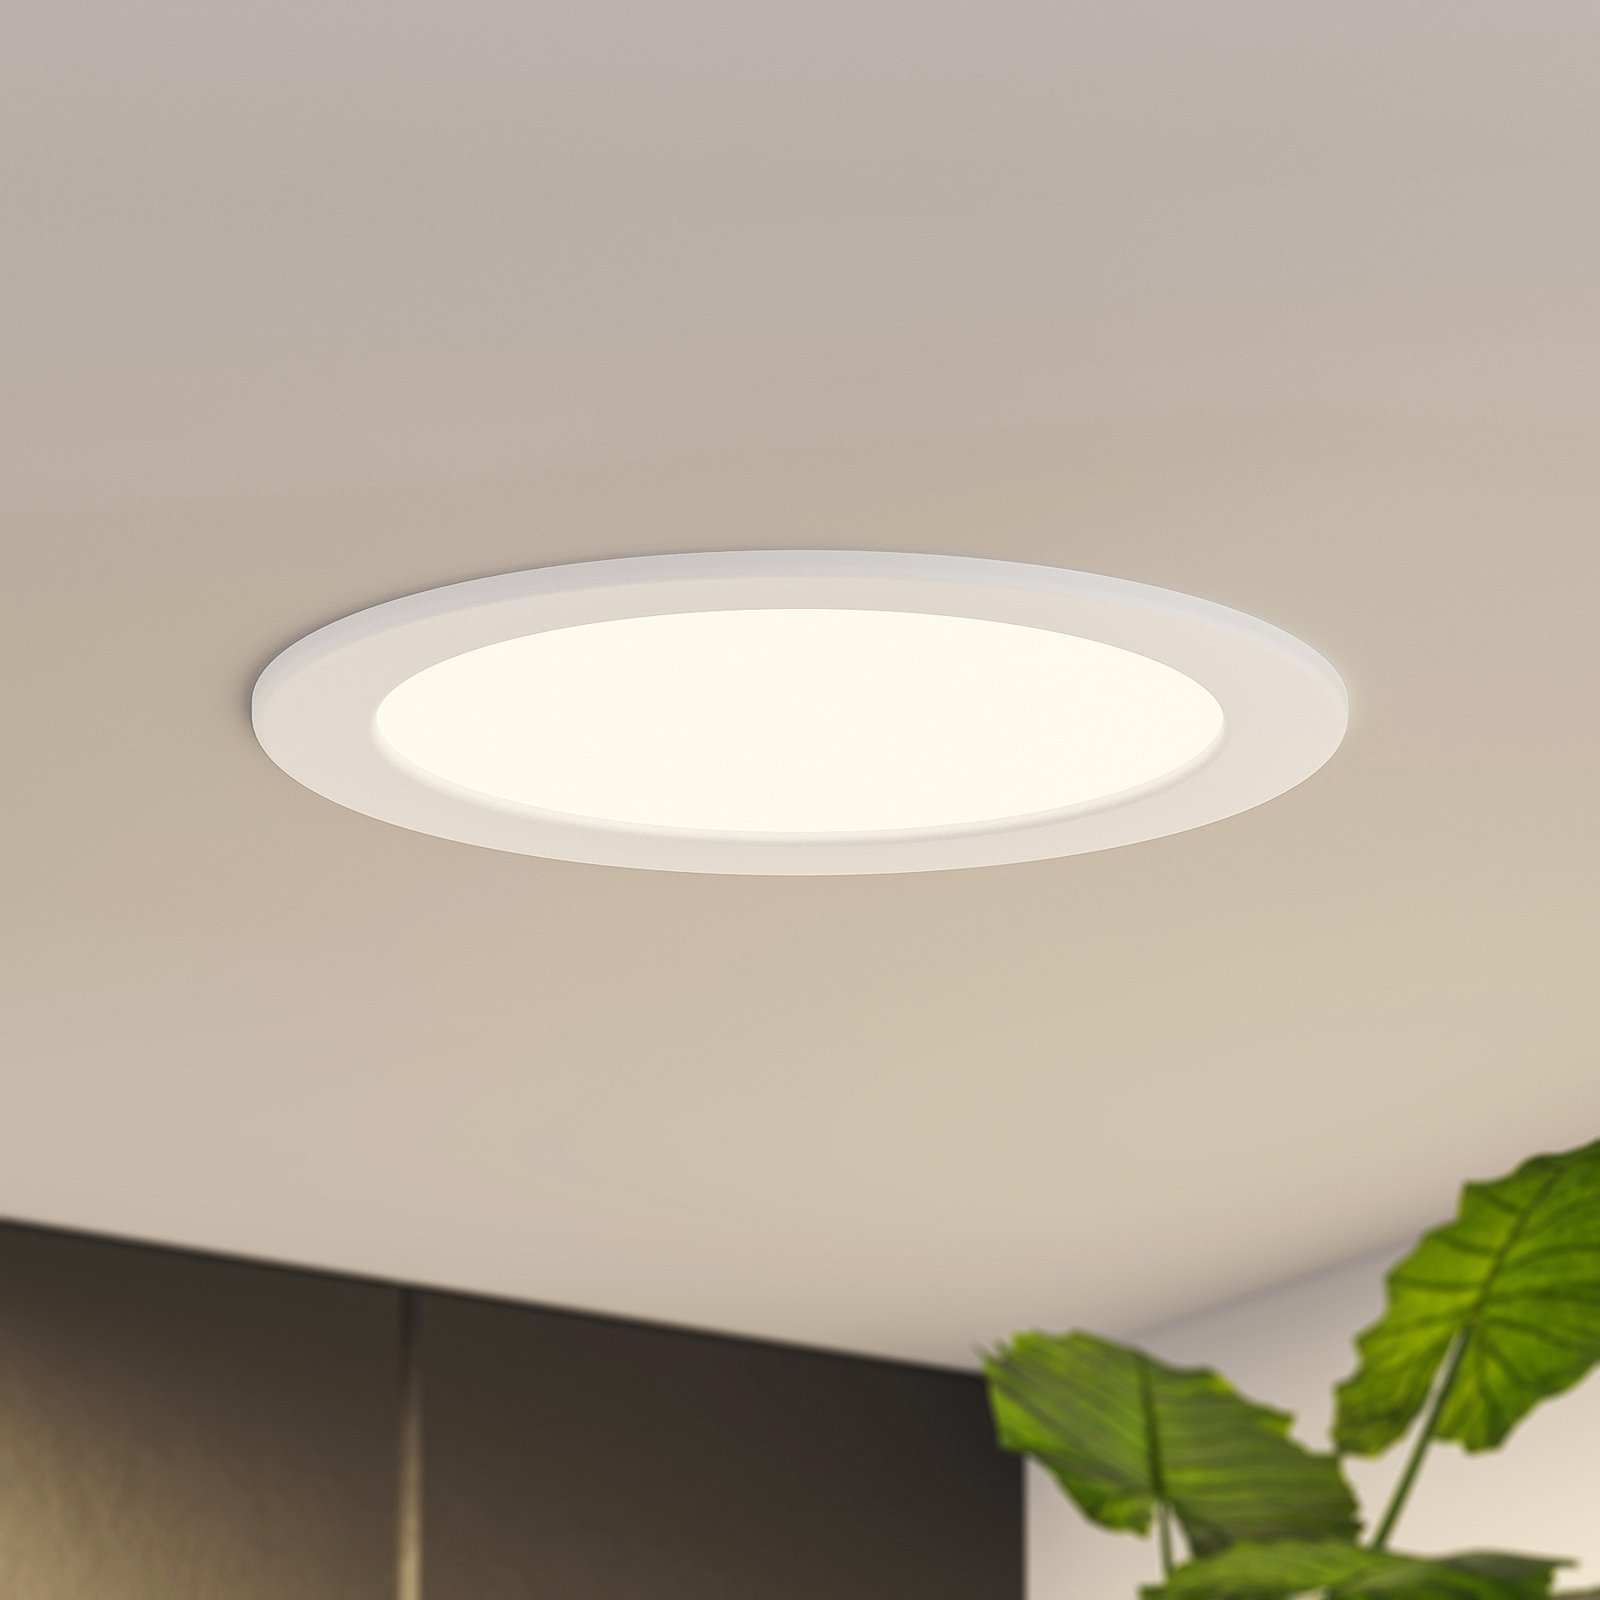 Prios Cadance lampe encastrée LED blanche, 22 cm